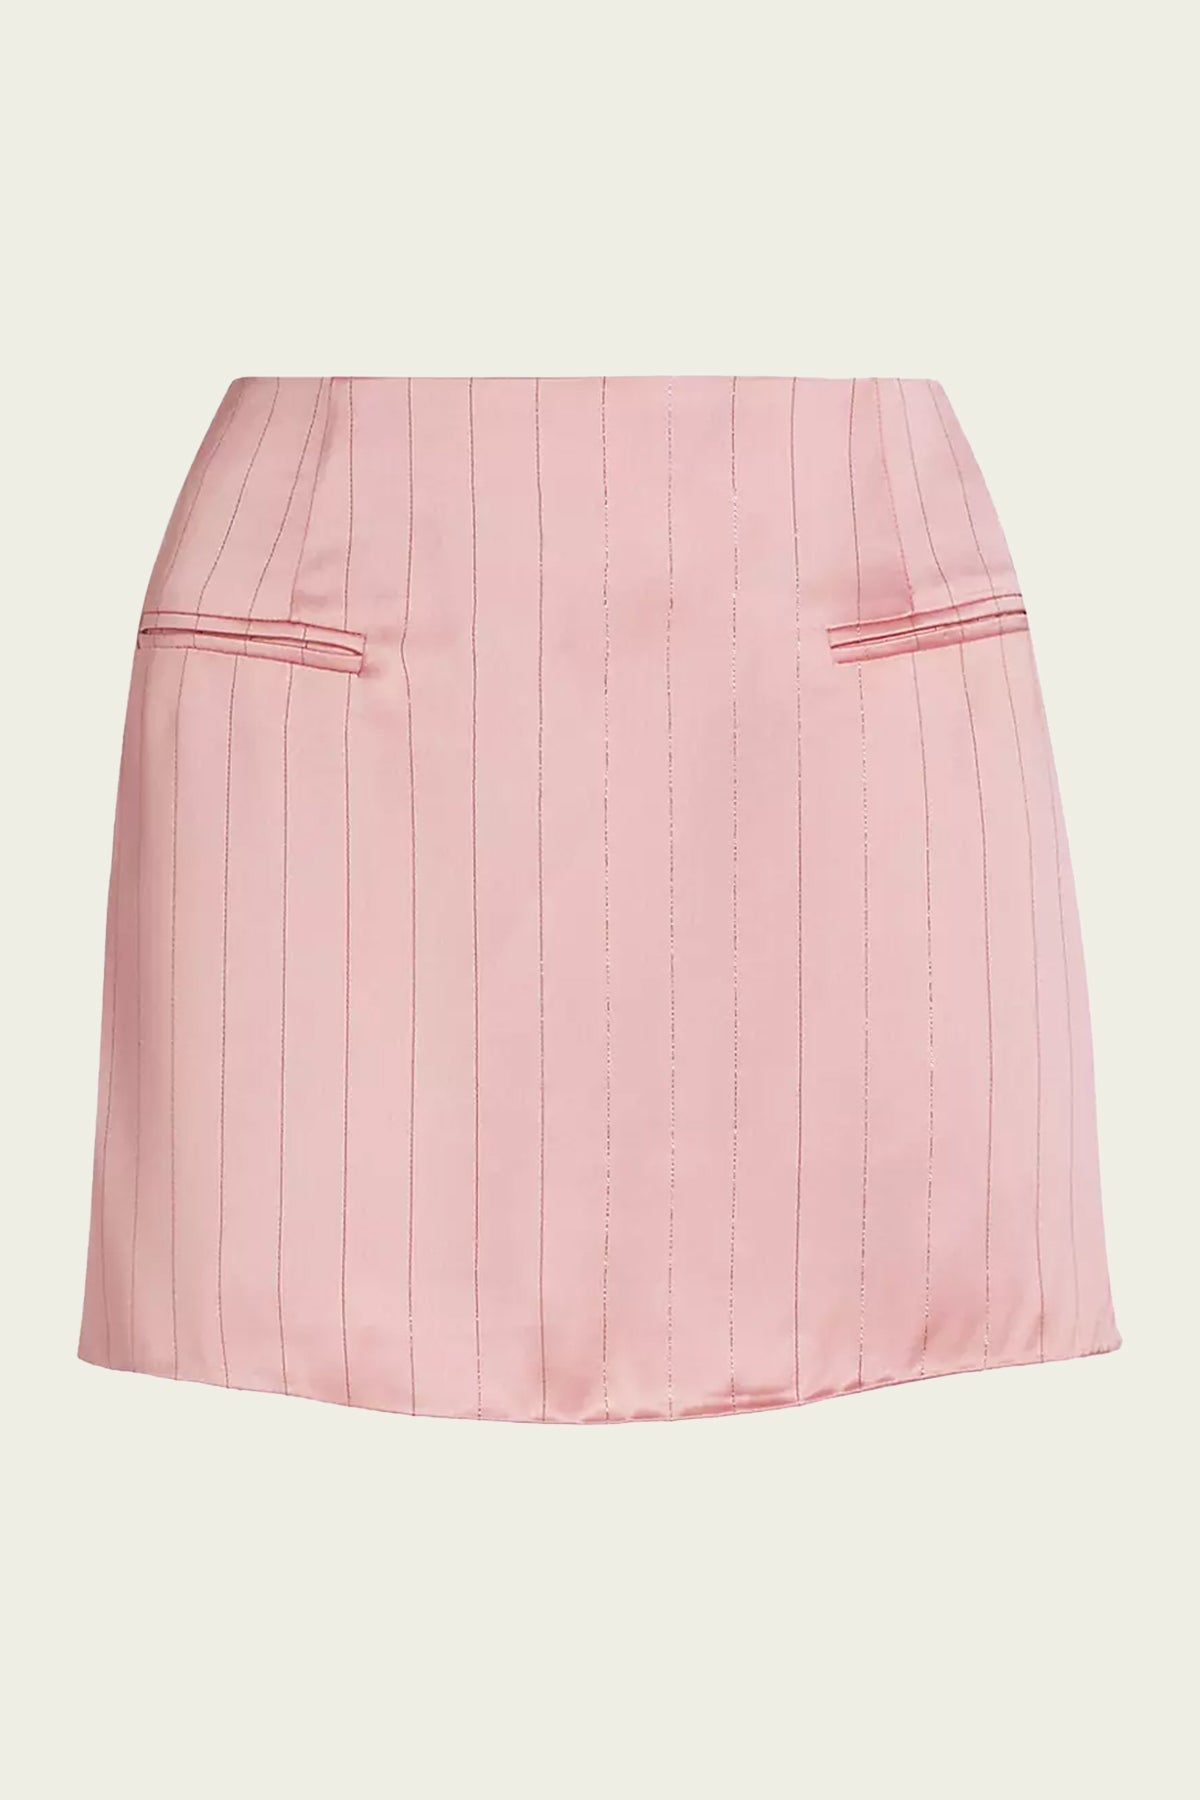 Tove Mini Skirt in Desert Rose - shop-olivia.com